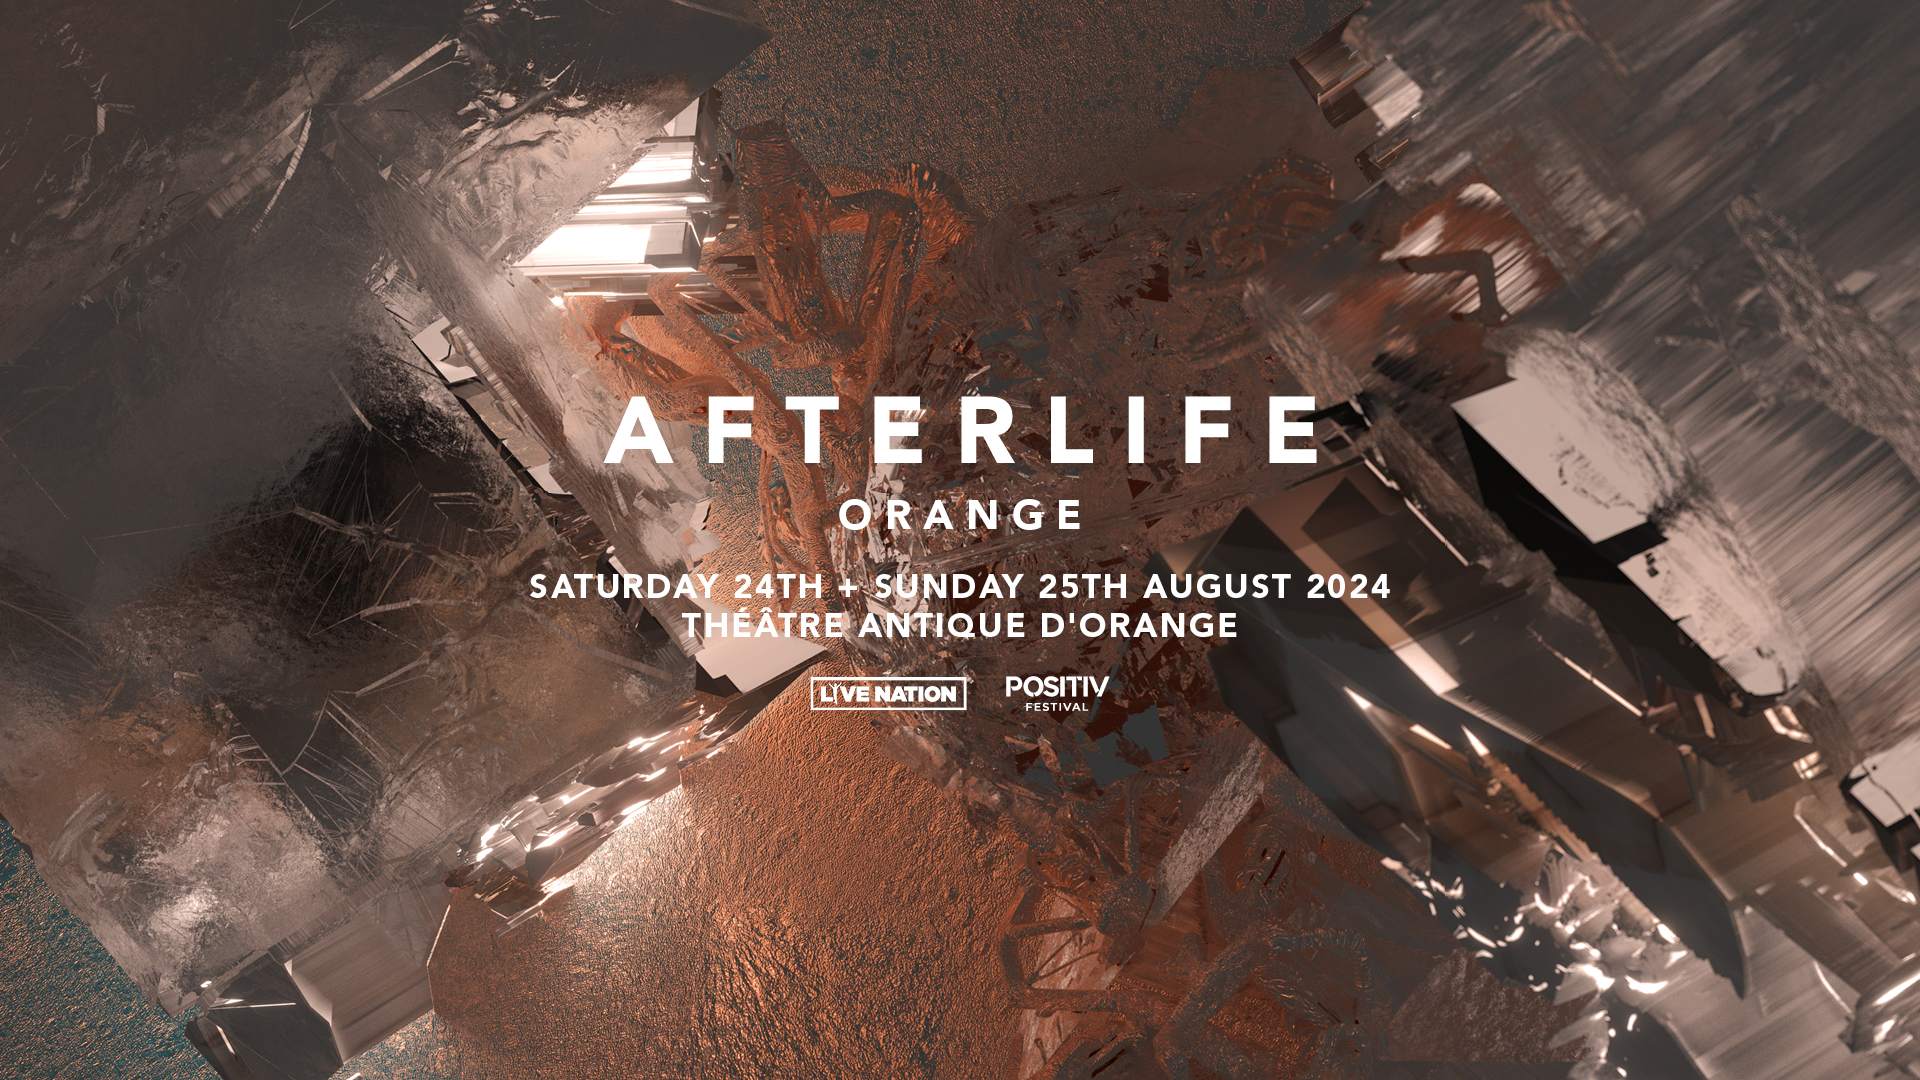 Afterlife Orange 2024 - フライヤー表